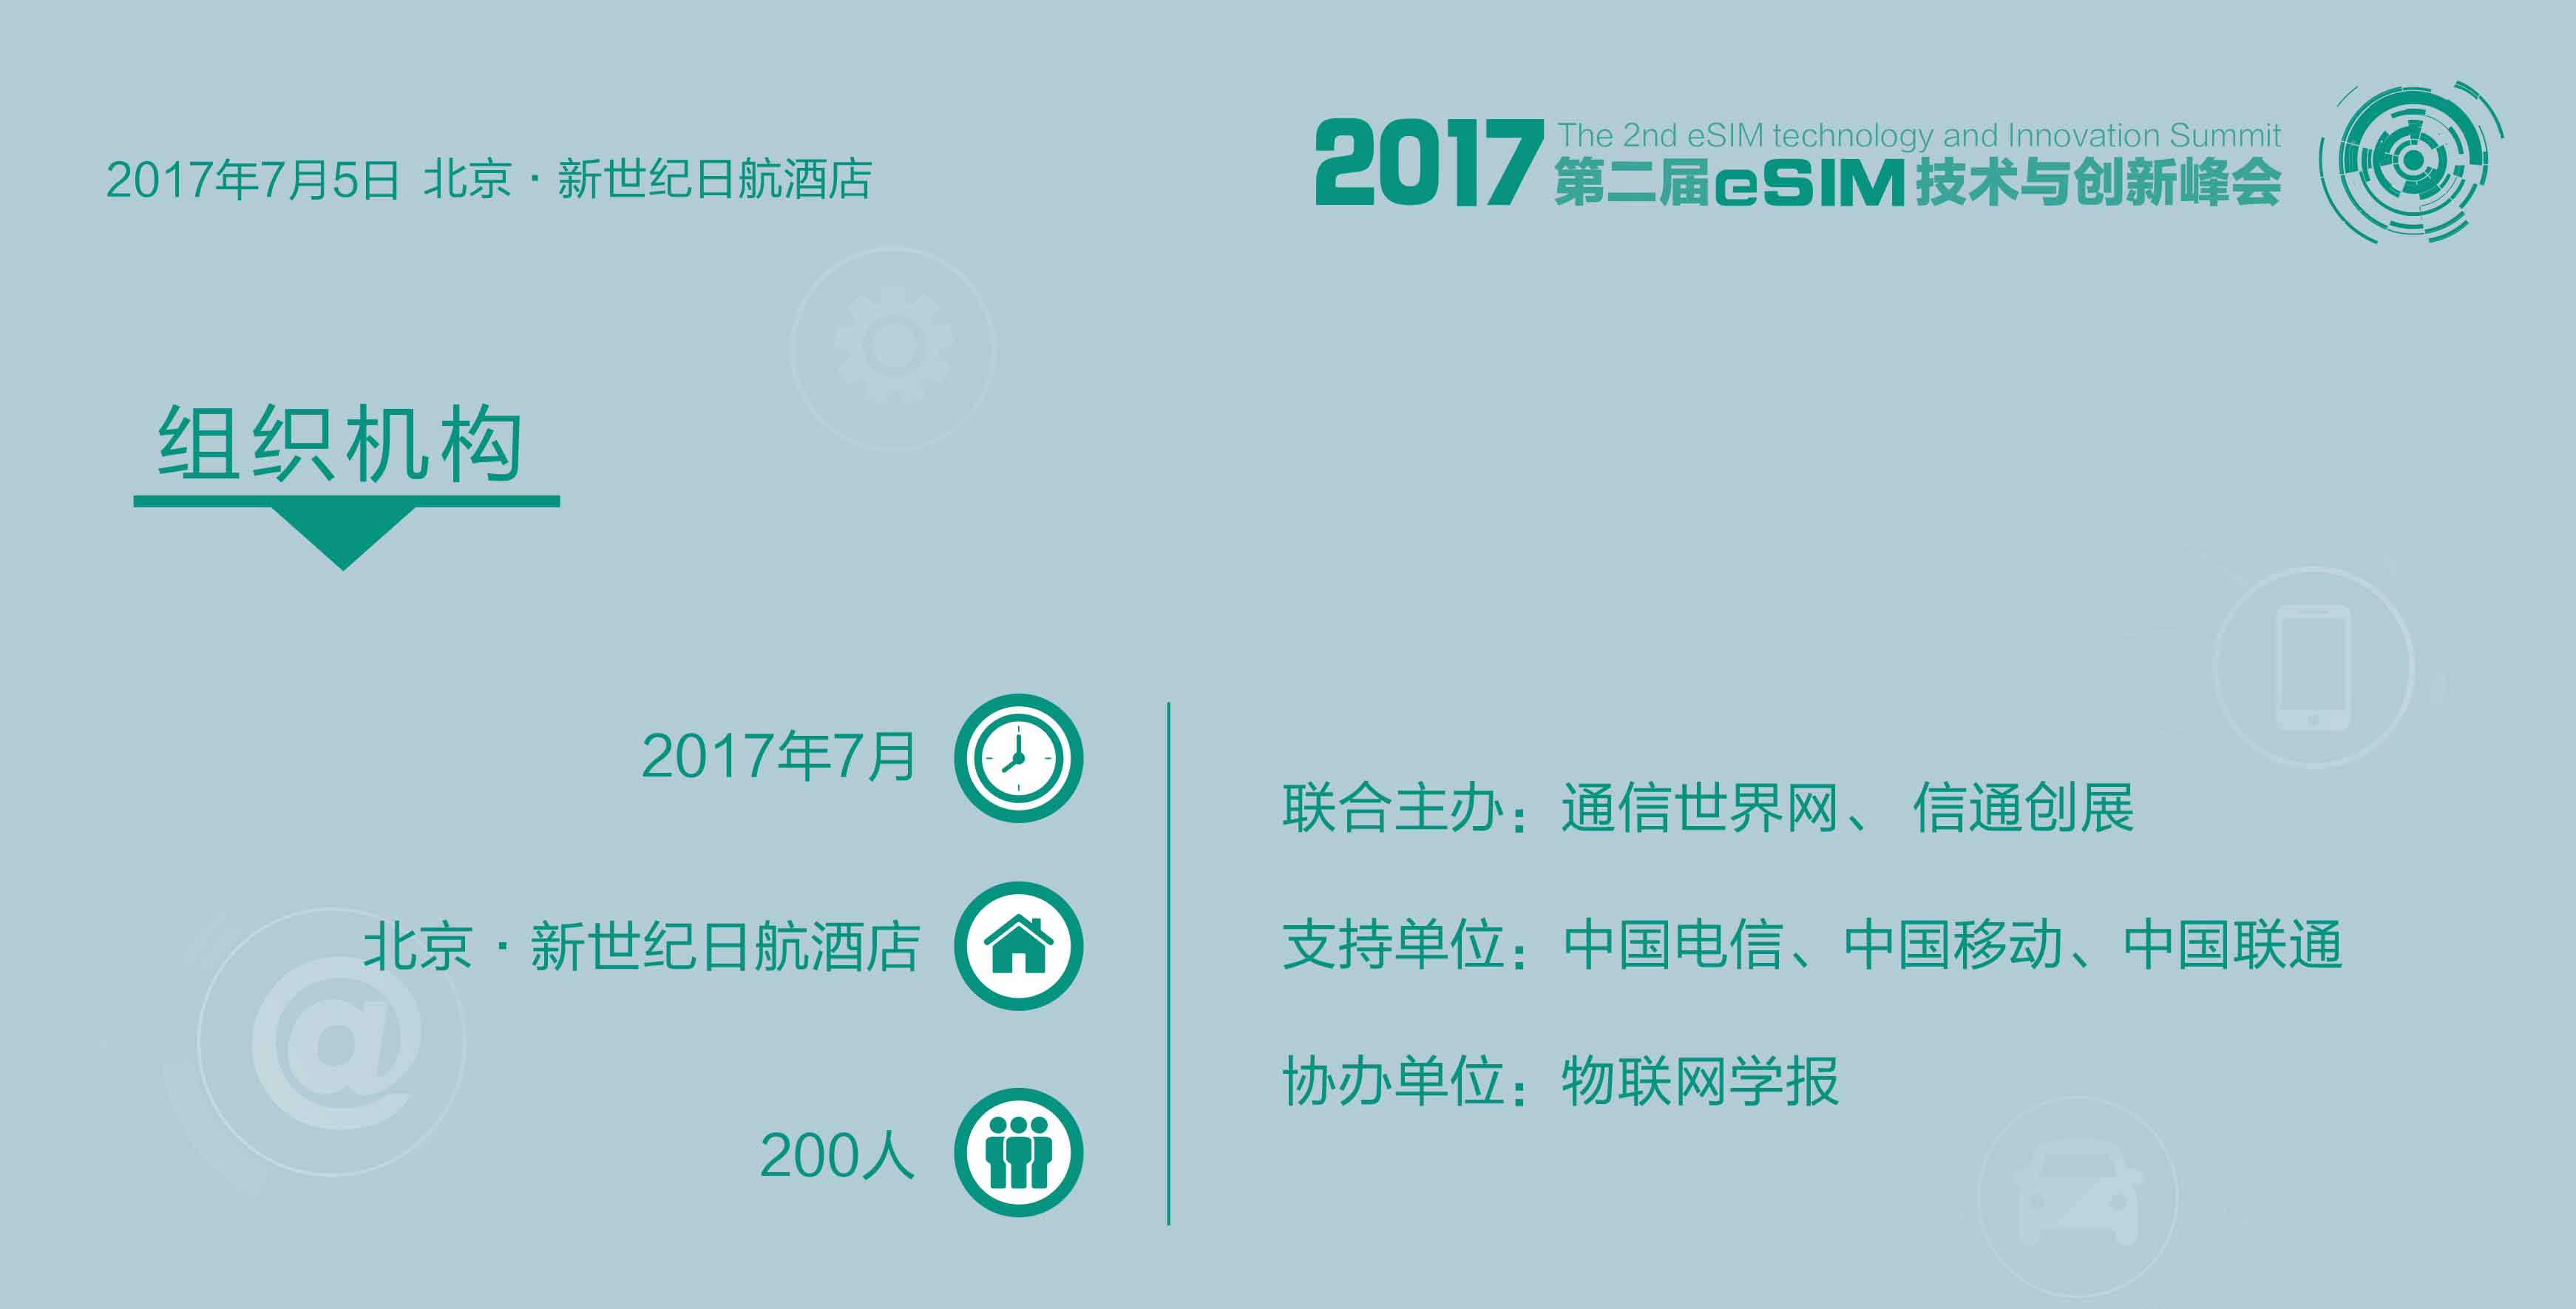 2017第二届eSIM技术与创新峰会